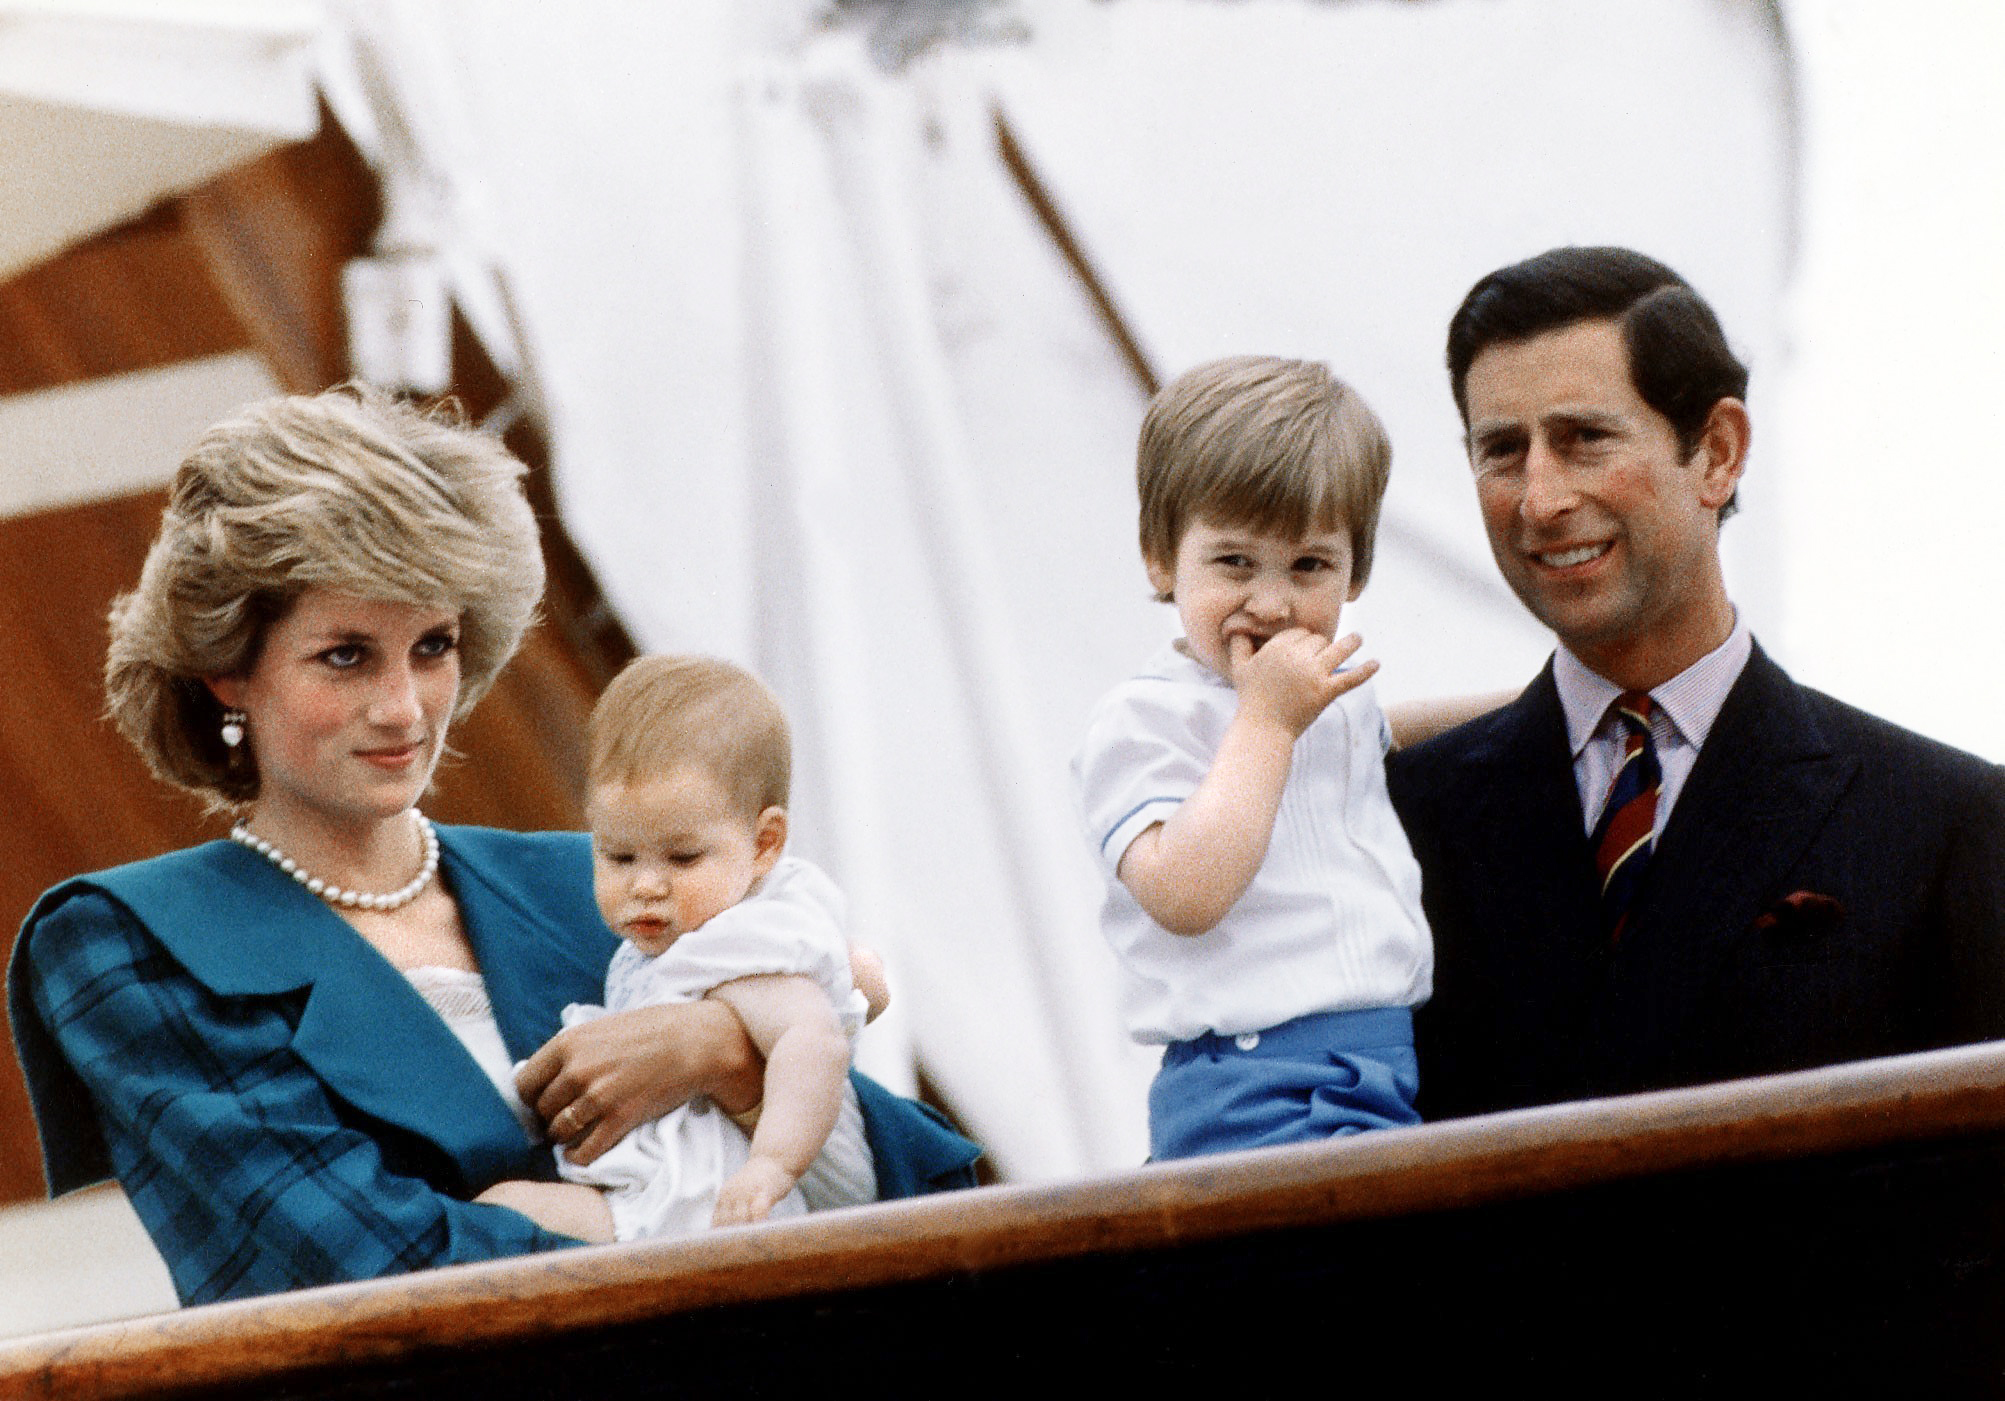 La princesse Diana, le prince Harry, le prince William et le prince Charles à bord du yacht royal Britannia le 6 mai 1985 à Venise, en Italie. | Source : Getty Images